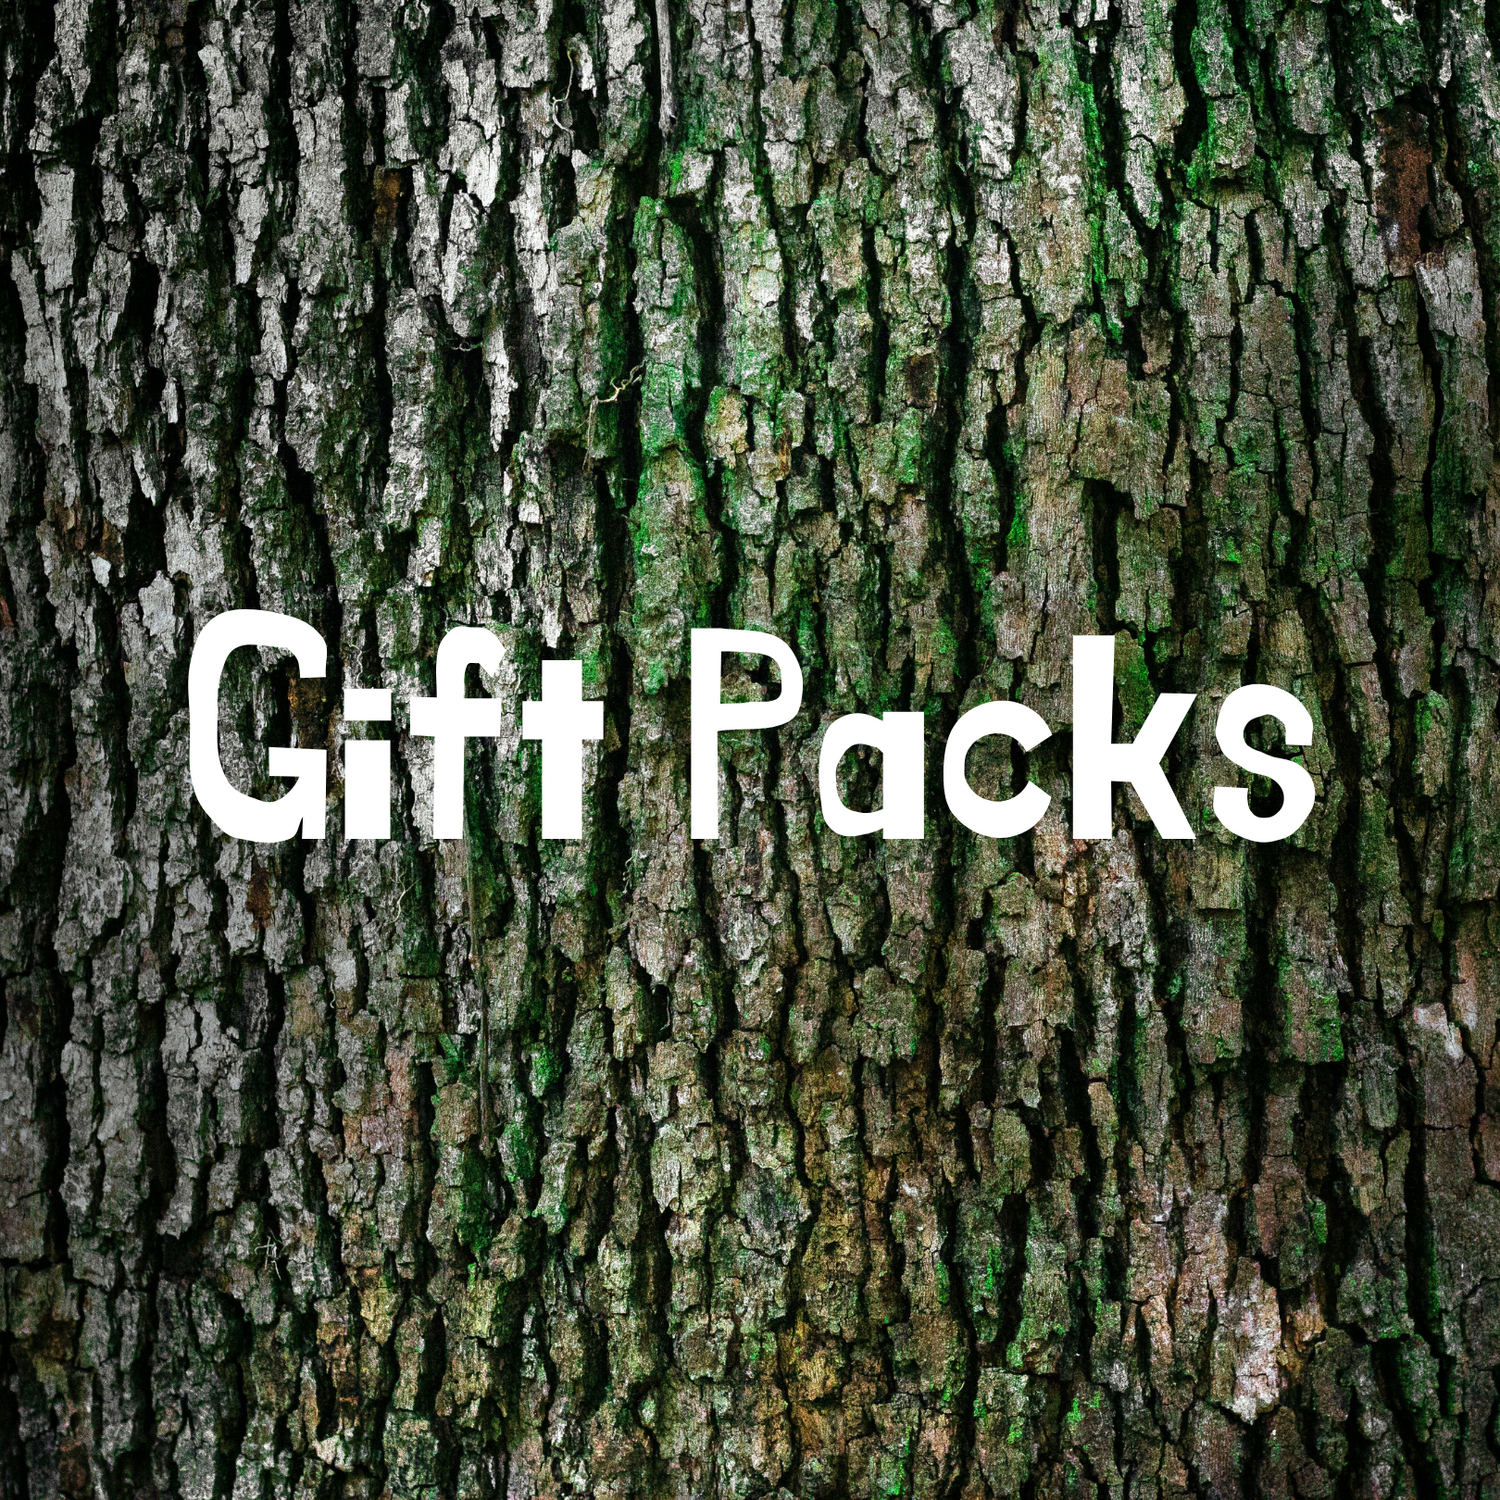 Gift Packs